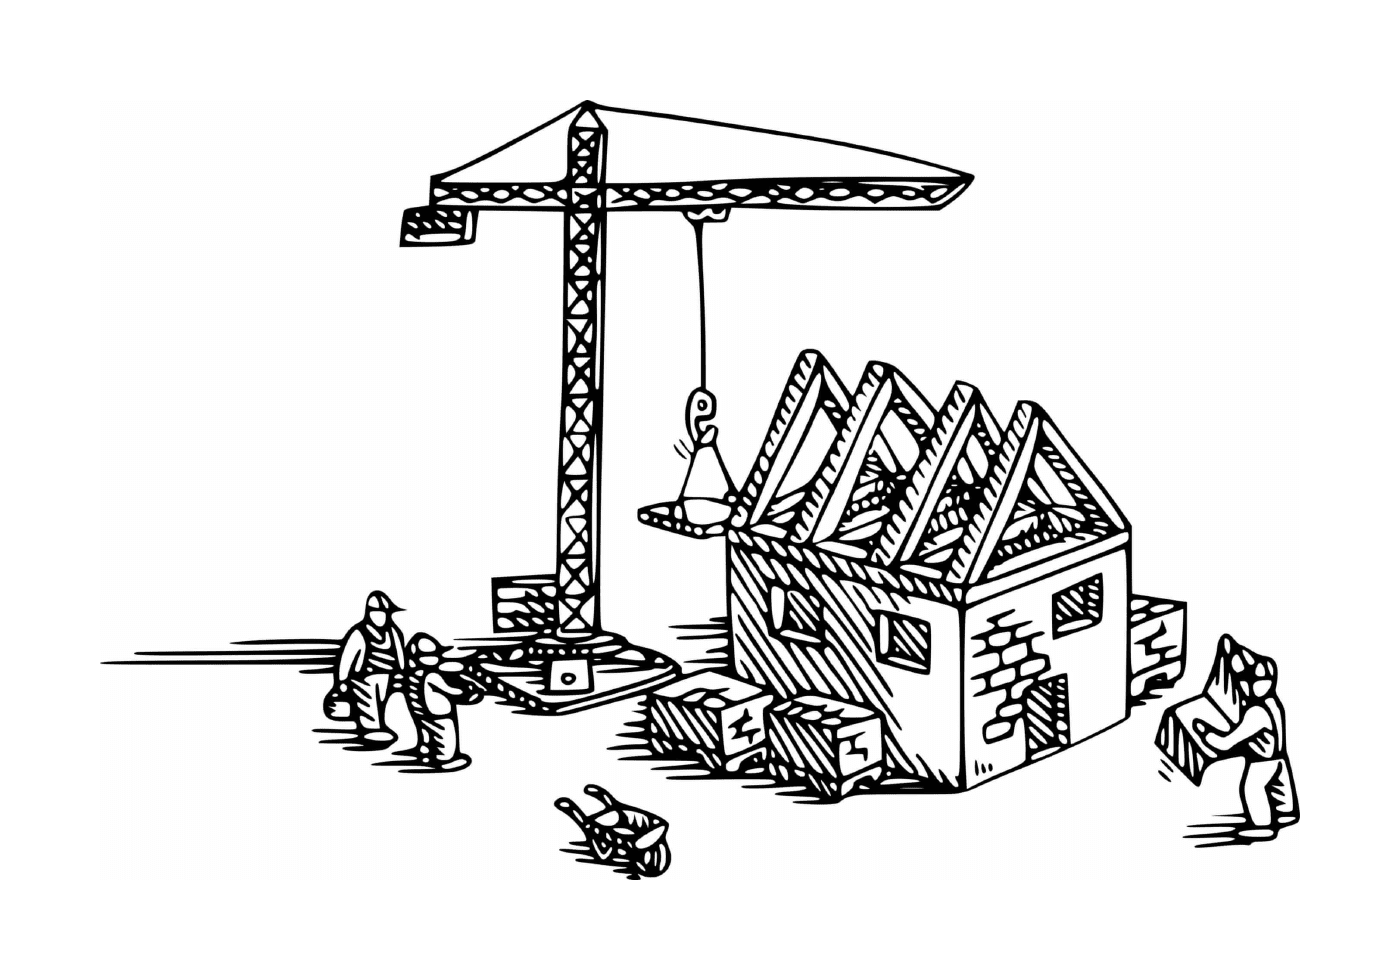  رافعة البناء المستخدمة في بناء منزل 